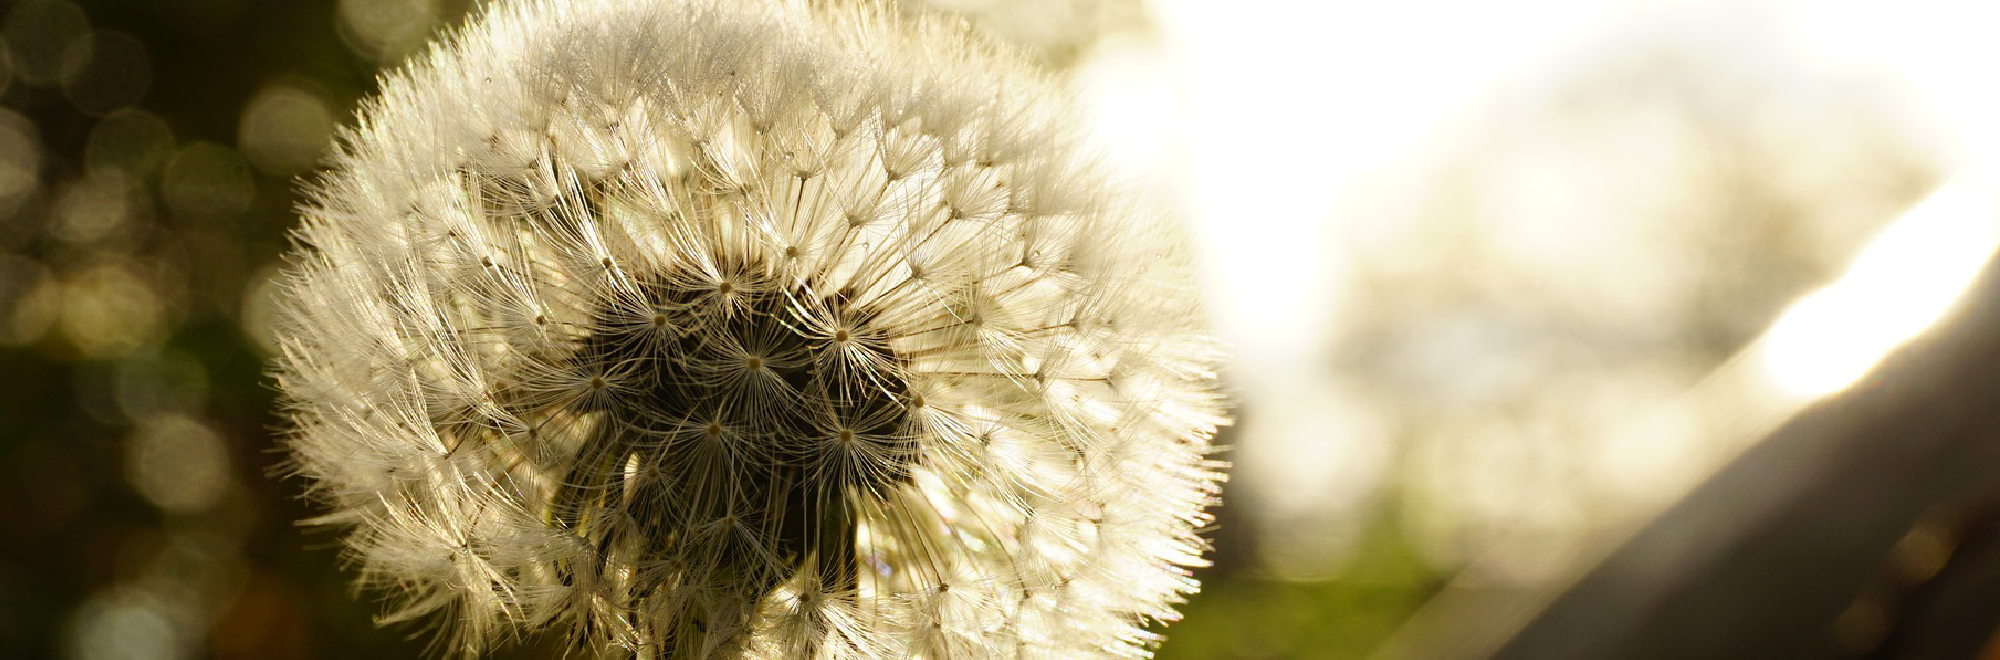 Closeup of a dandelion in a sepia tone.